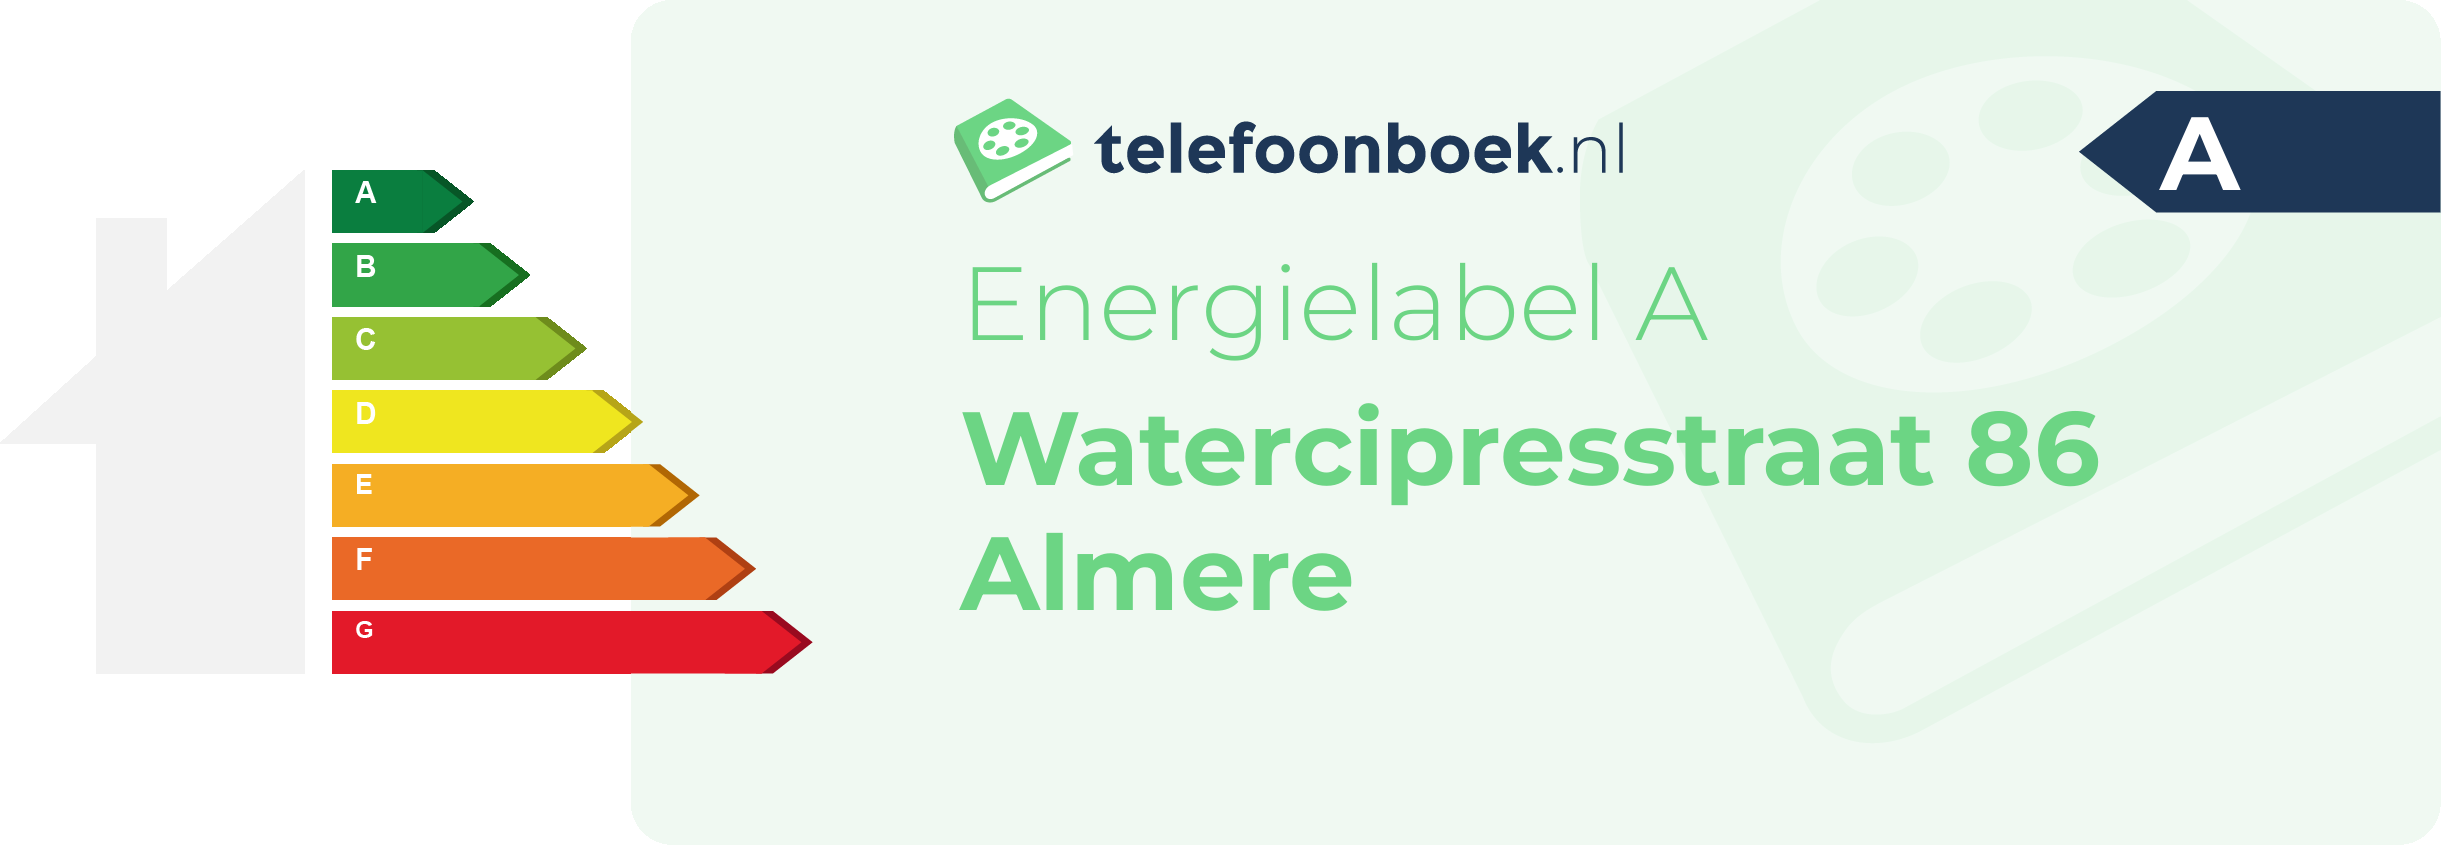 Energielabel Watercipresstraat 86 Almere